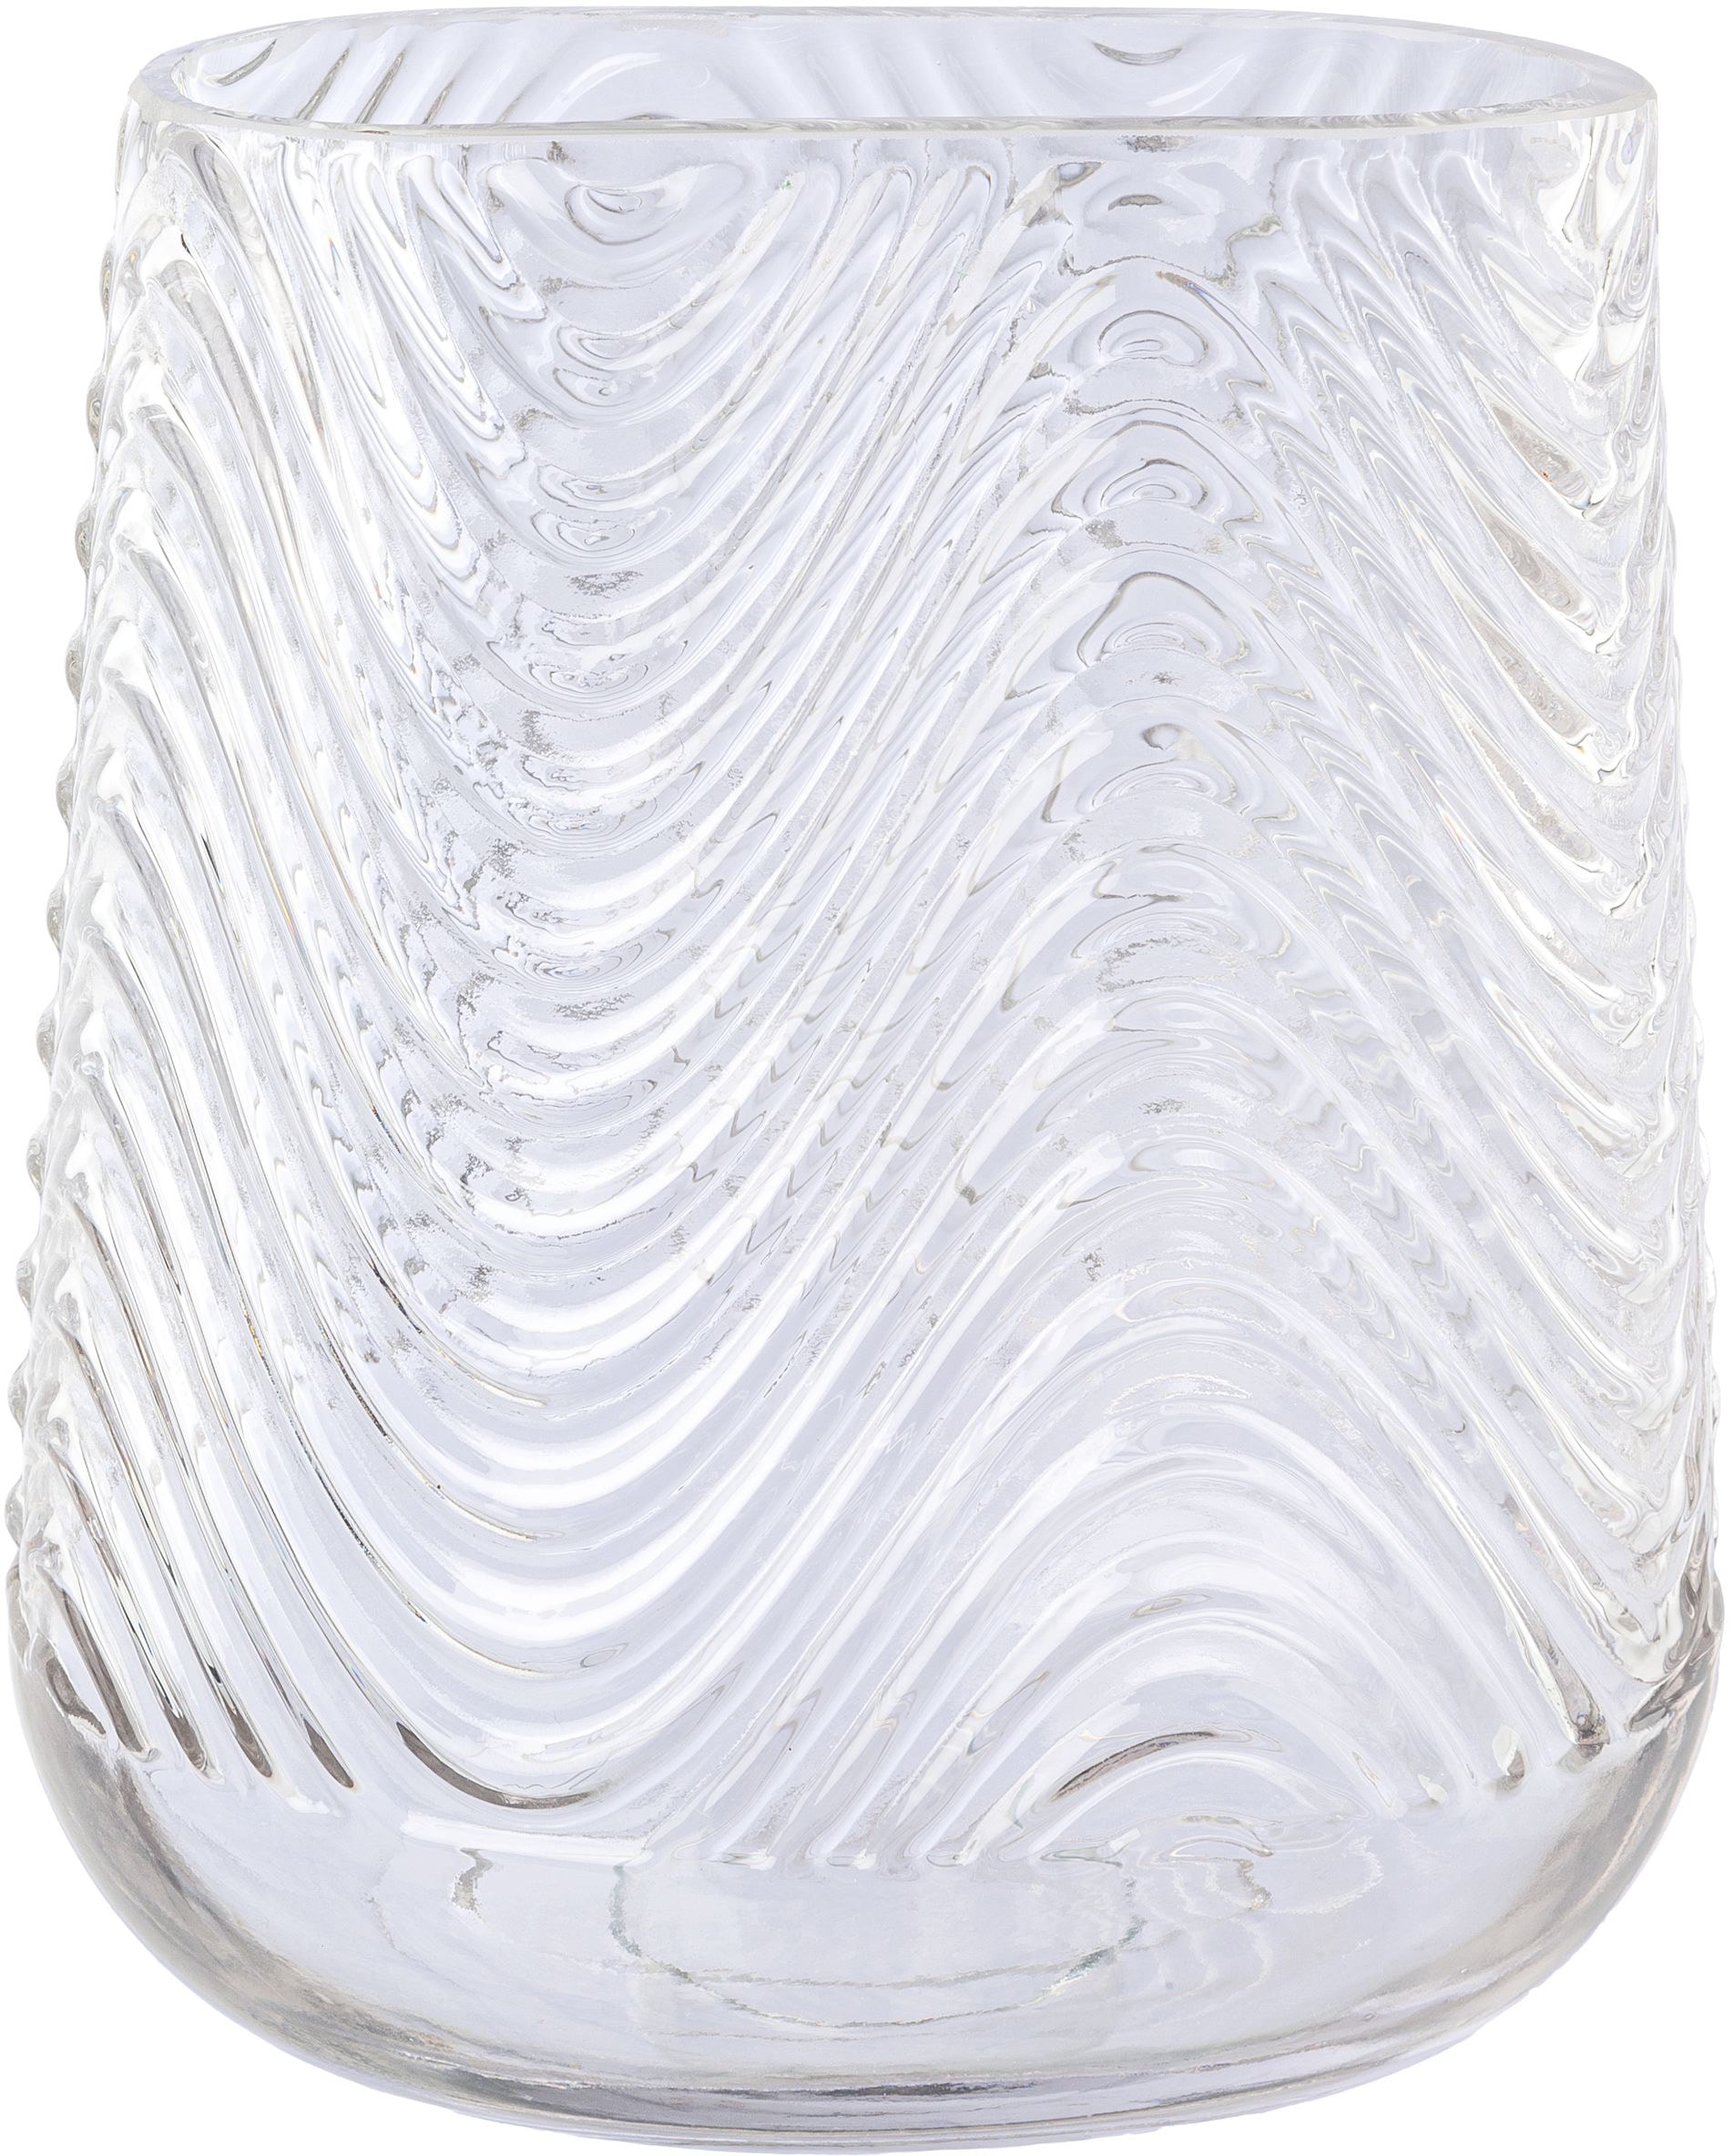 Creativ deco Tischvase »Vase aus Glas, mit Relief-Struktur-Oberfläche«, (1 St.), oval, Höhe ca. 21 cm